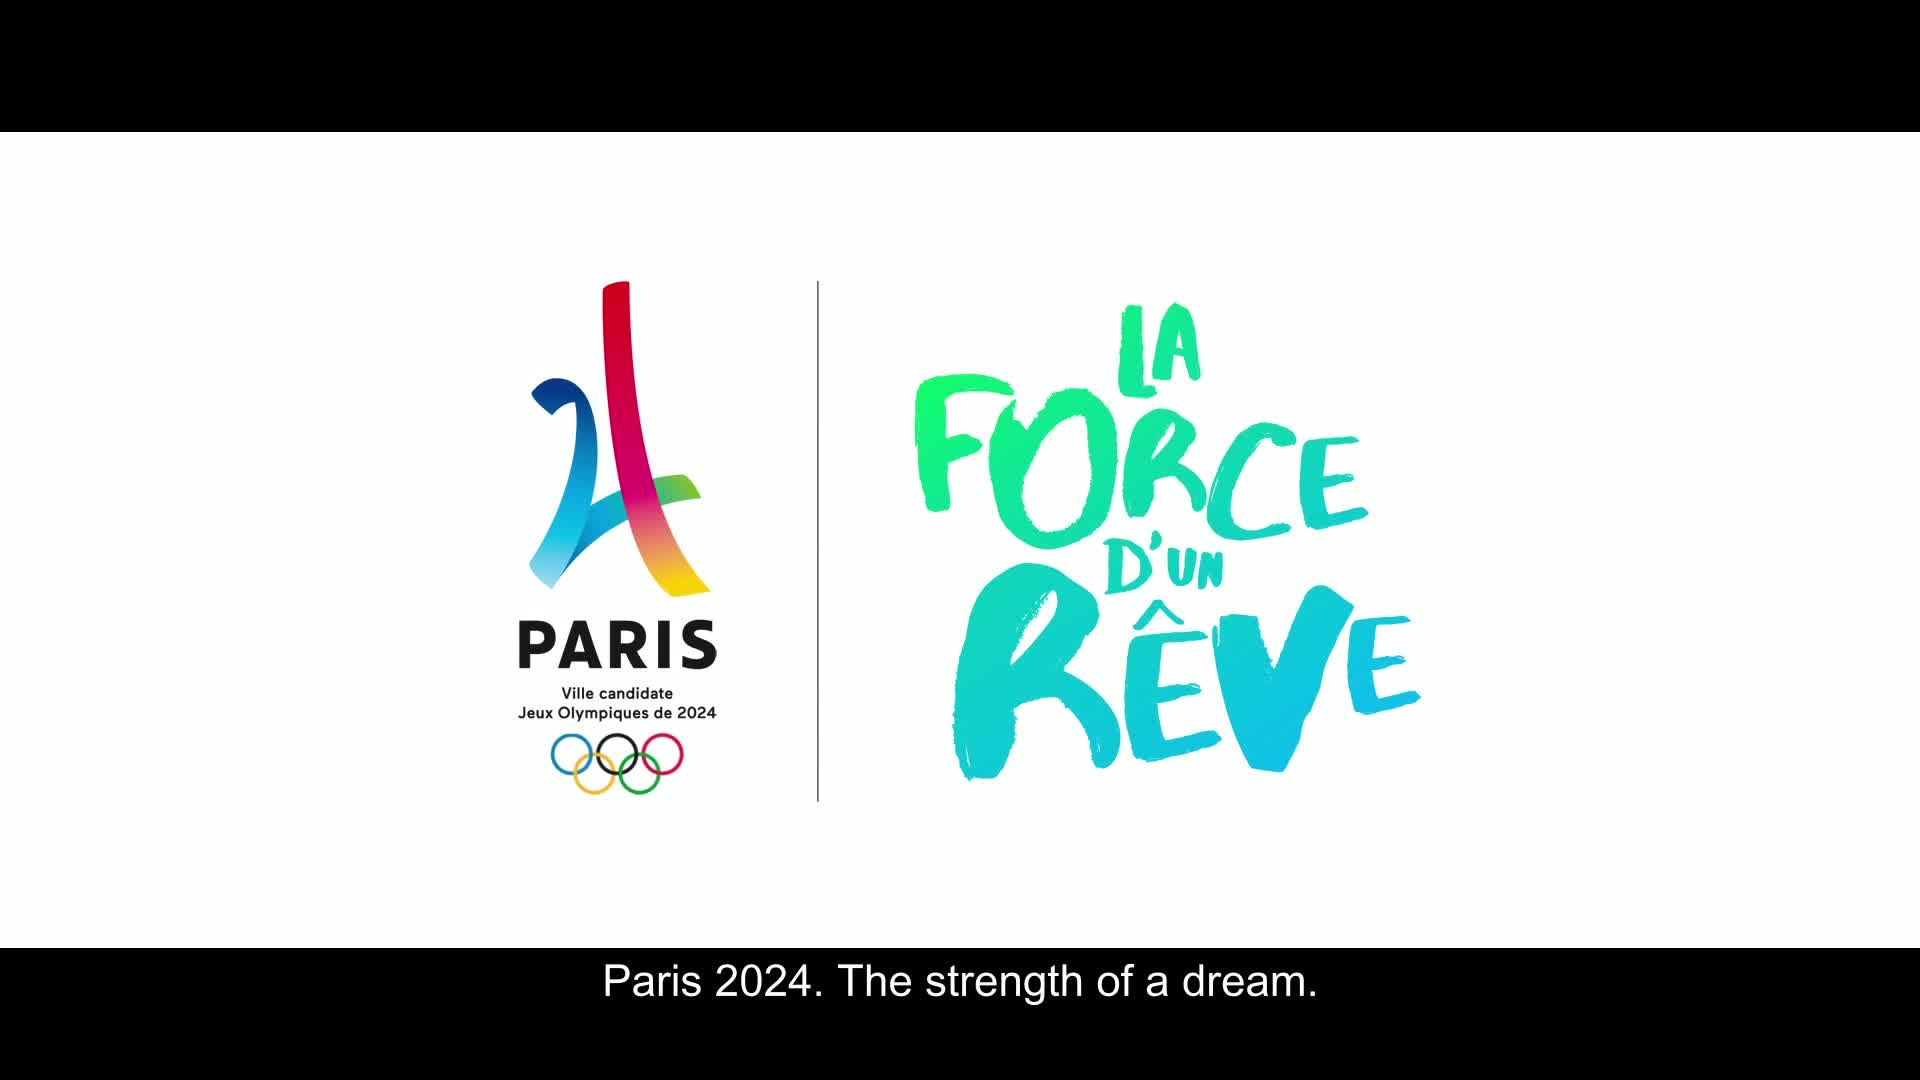 JO - Paris 2024 : Le clip officiel de la candidature - Vidéo